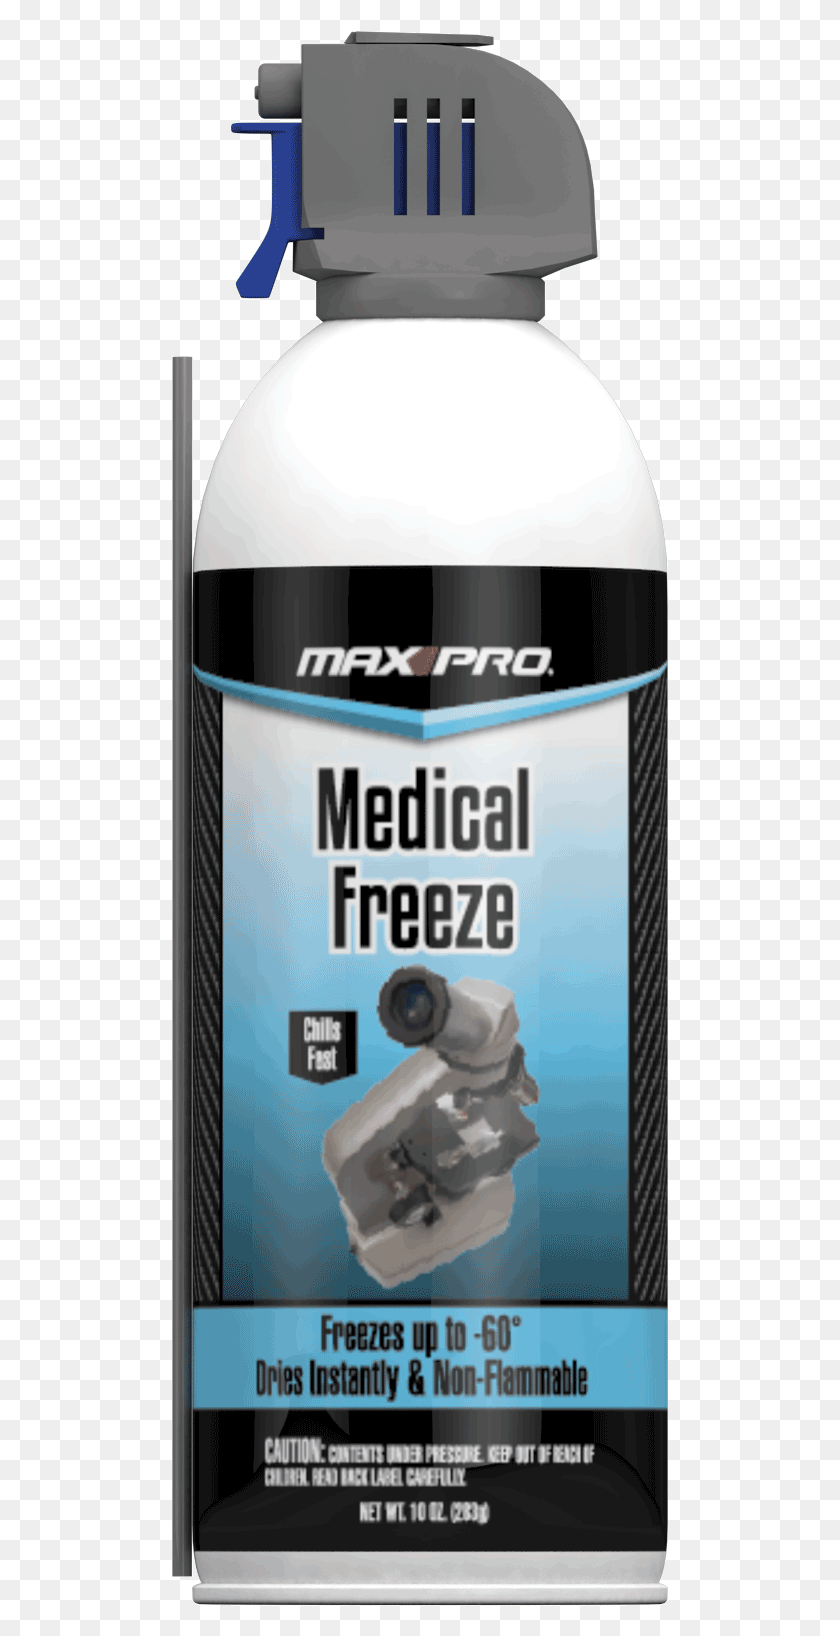 497x1576 Descargar Png Max Pro Medical Freeze Spray, Lata, Lata, Etiqueta Hd Png